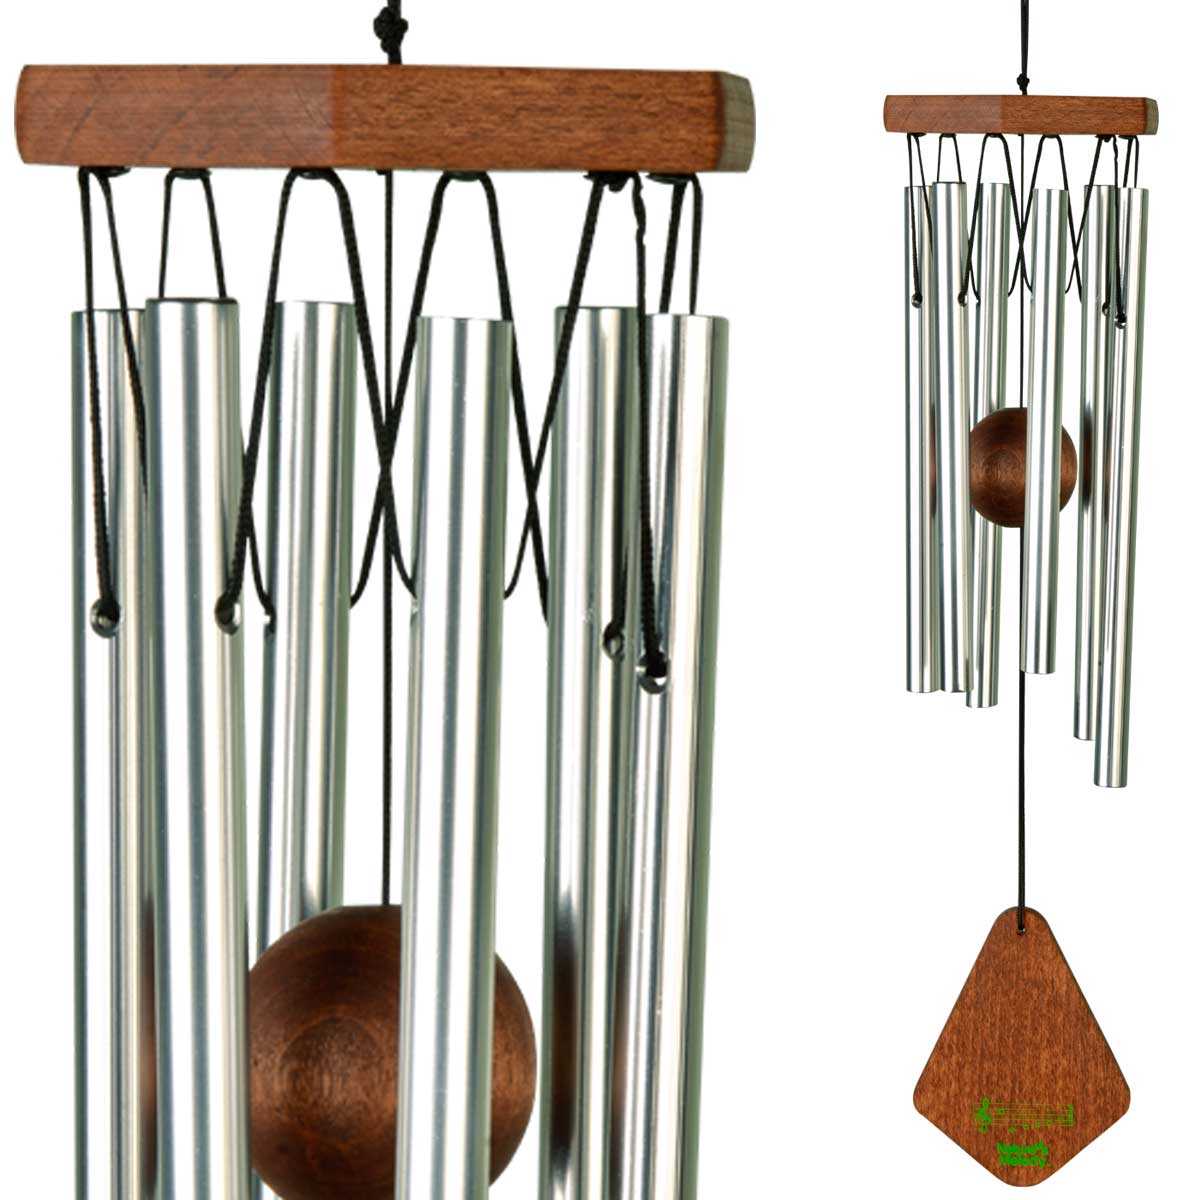 Carillons de Vent, 70 cm Carillons Éoliens en Bois avec 6 Tubes